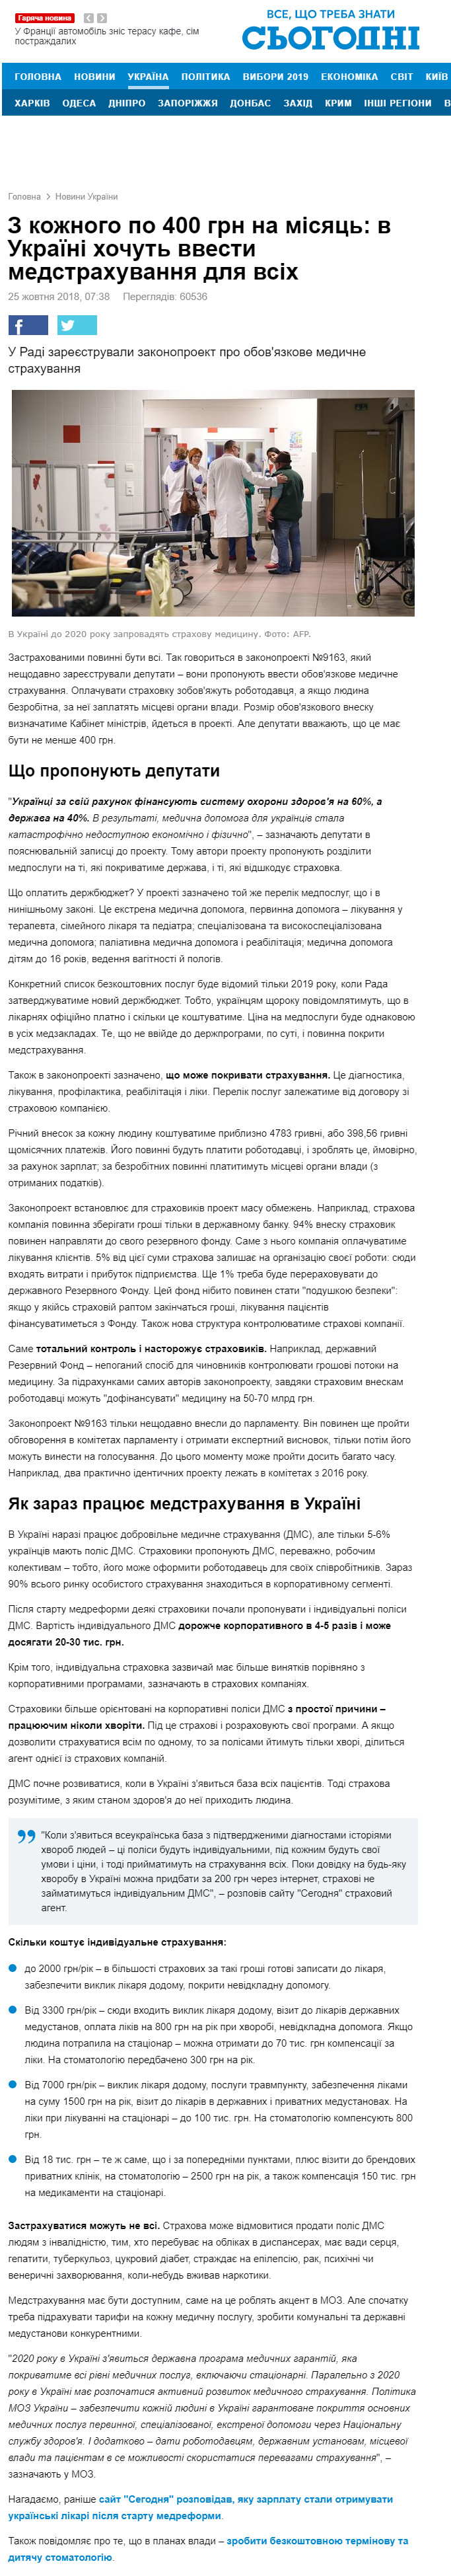 https://ukr.segodnya.ua/ukraine/s-kazhdogo-po-400-grn-v-mesyac-v-ukraine-predlagayut-vvesti-medicinskoe-strahovanie-1182586.html